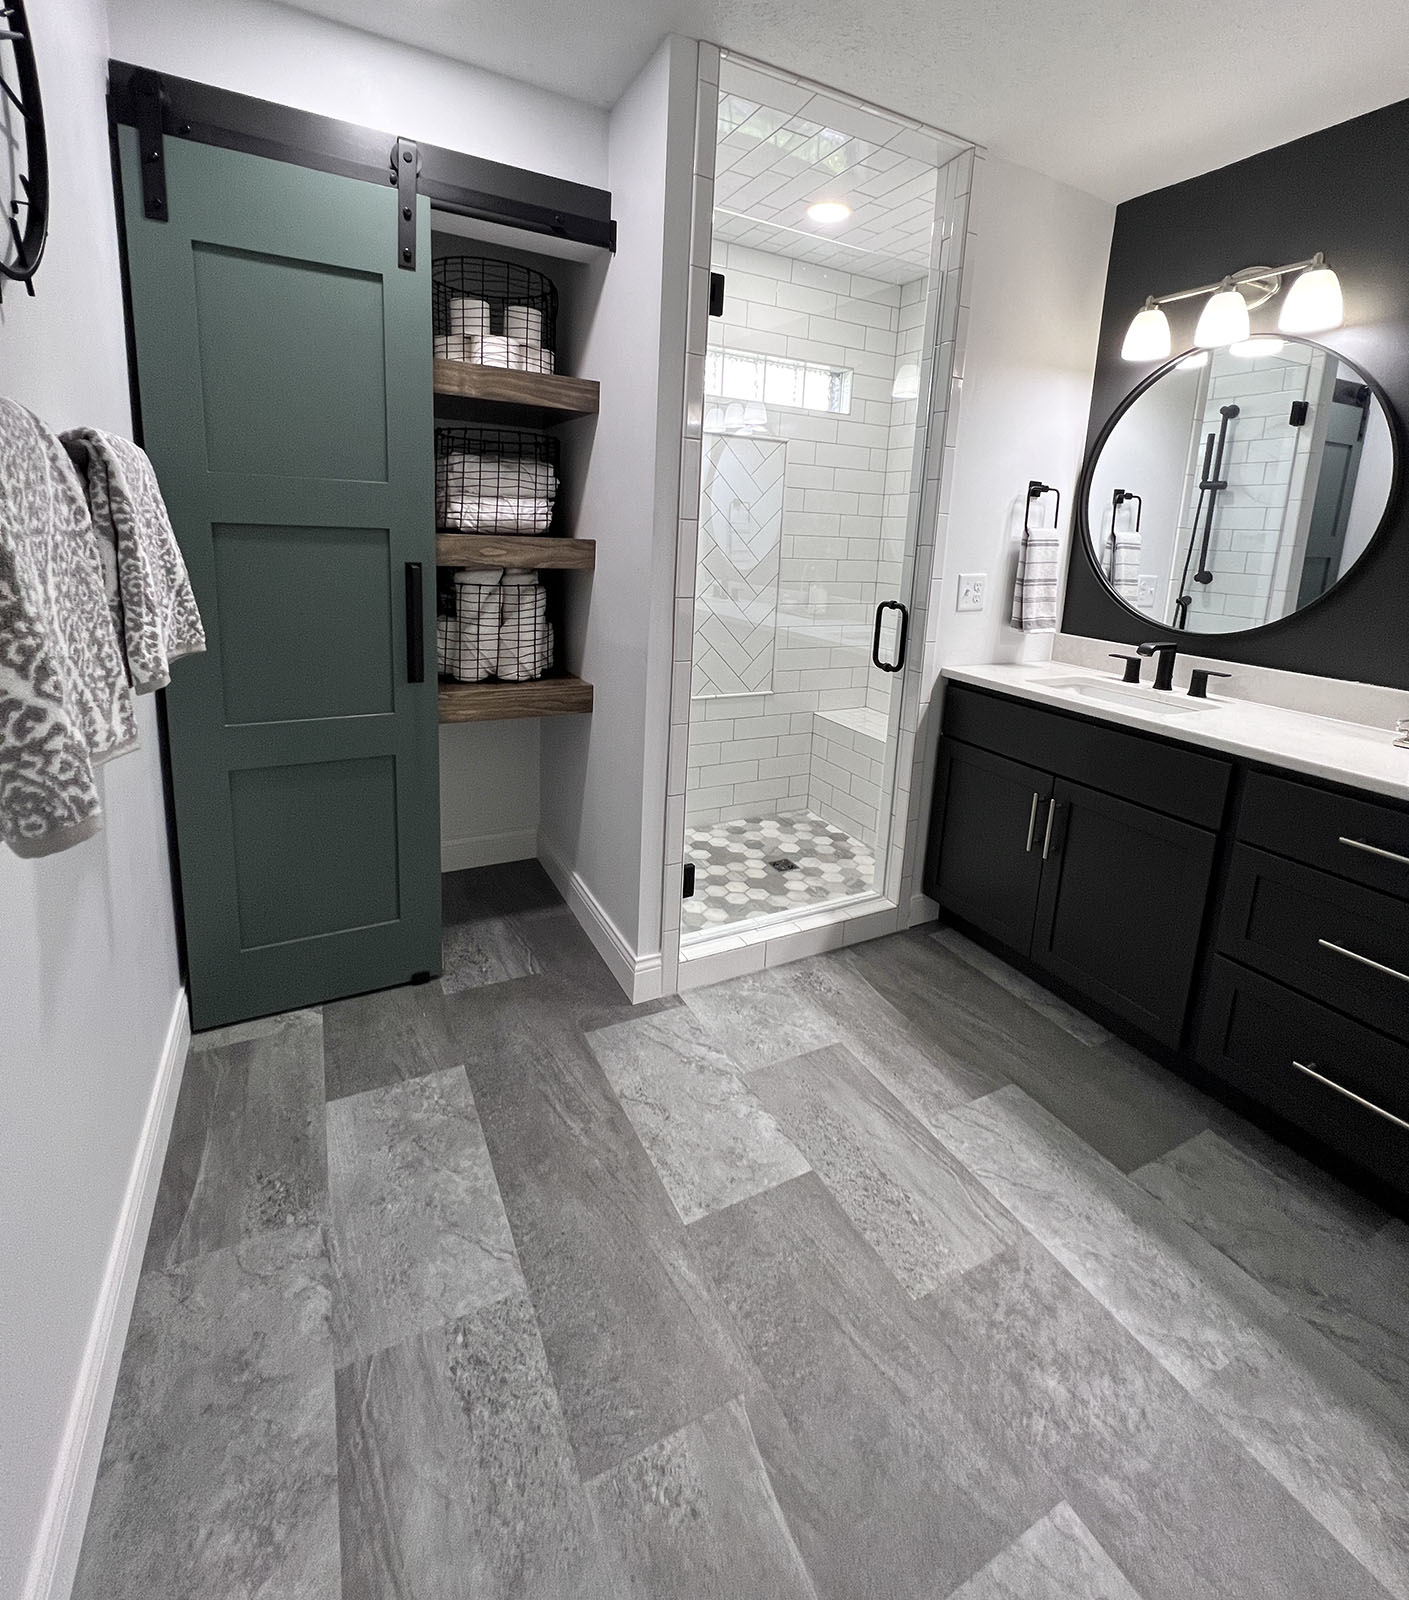 Shower room tiles design | Staff Carpet